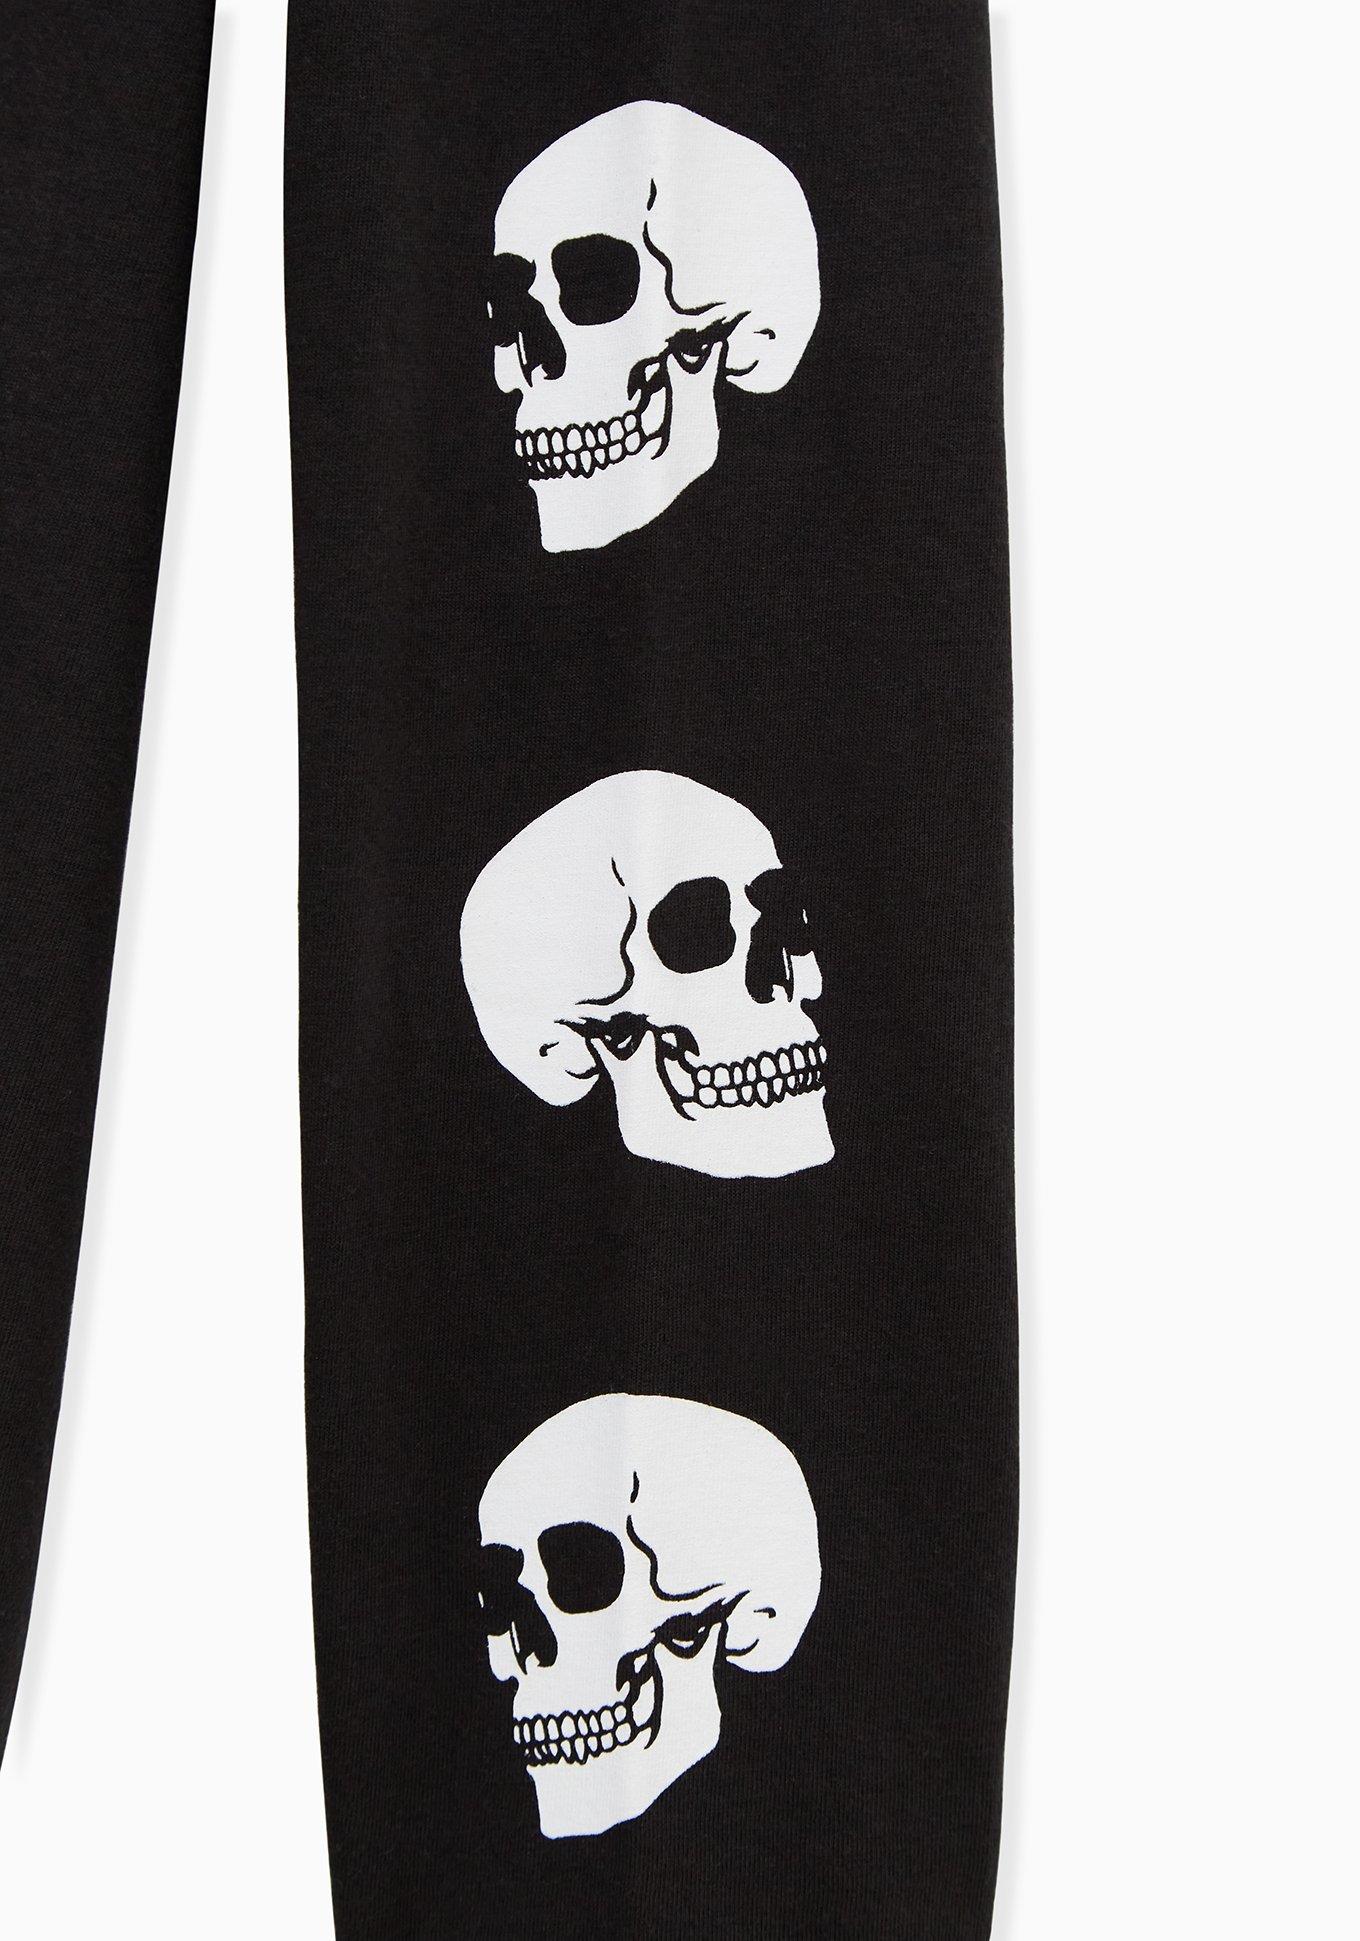 Plus Size - Black Skull Graphic Slim Fit Long Sleeve Tee - Torrid